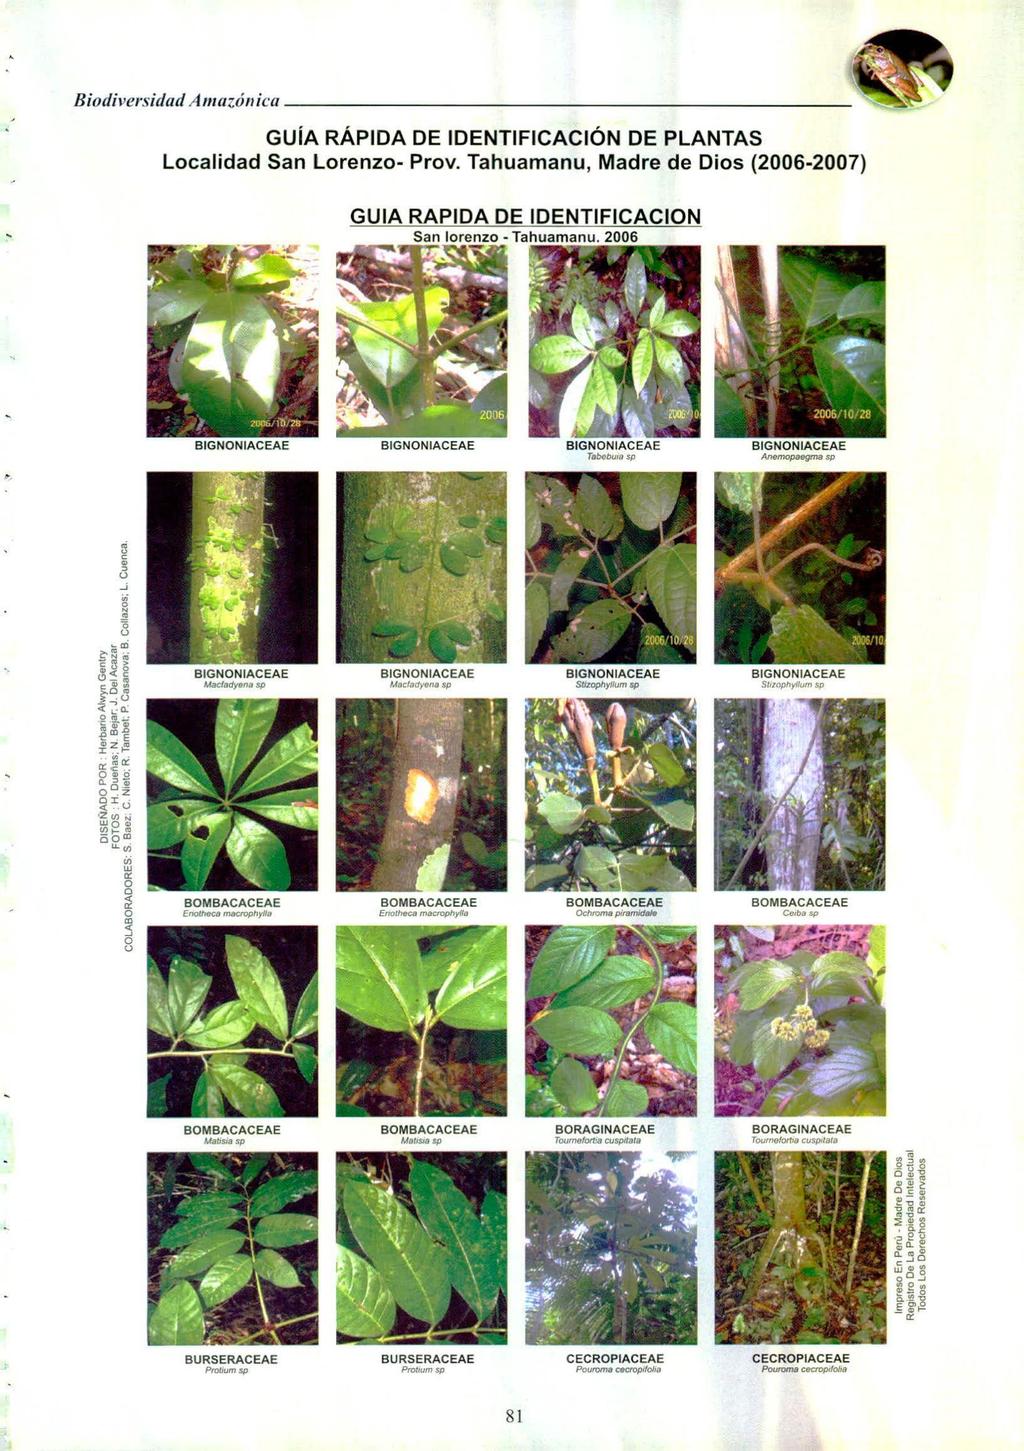 Biodiversidad Amazónica GUÍA RÁPIDA DE IDENTIFICACIÓN DE PLANTAS Localidad San Lorenzo- Prov. Tahuamanu, Madre de Dios (2006-2007) GUIA RAPIDA DE IDENTIFICACION San lorenzo - Tahuamanu.